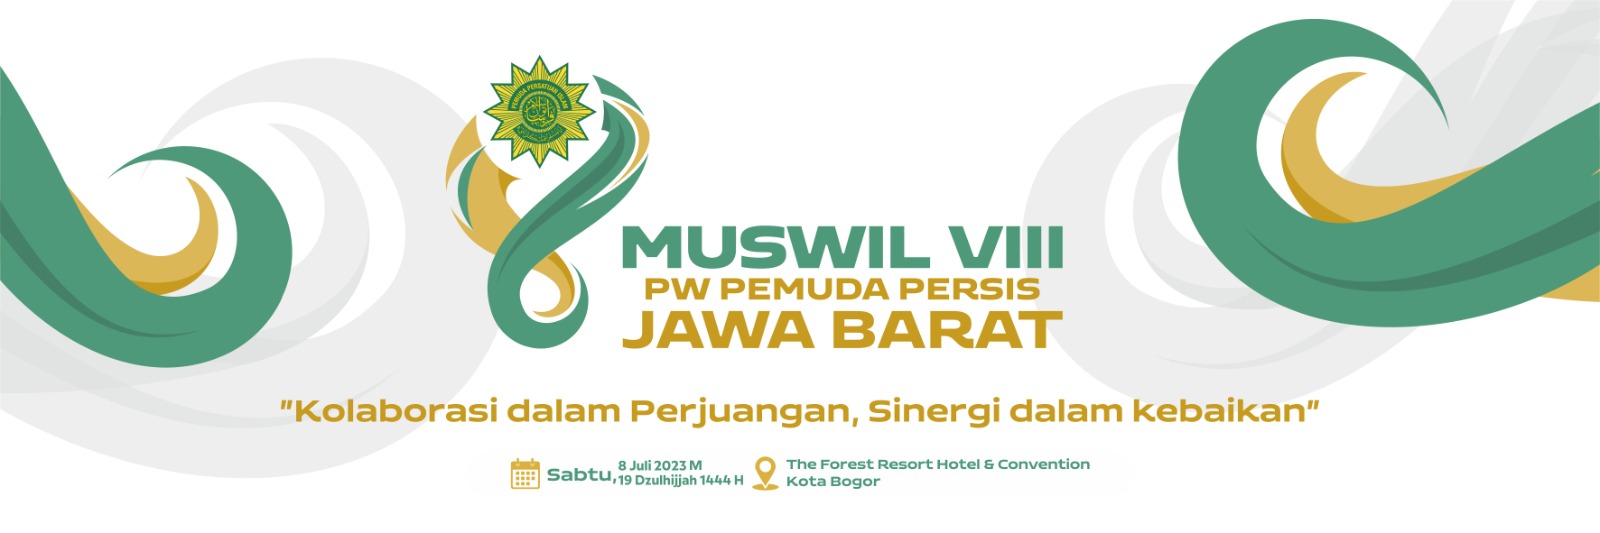 Logo Muswil VIII Resmi Diliris, Bagaimana Makna Filosofisnya?